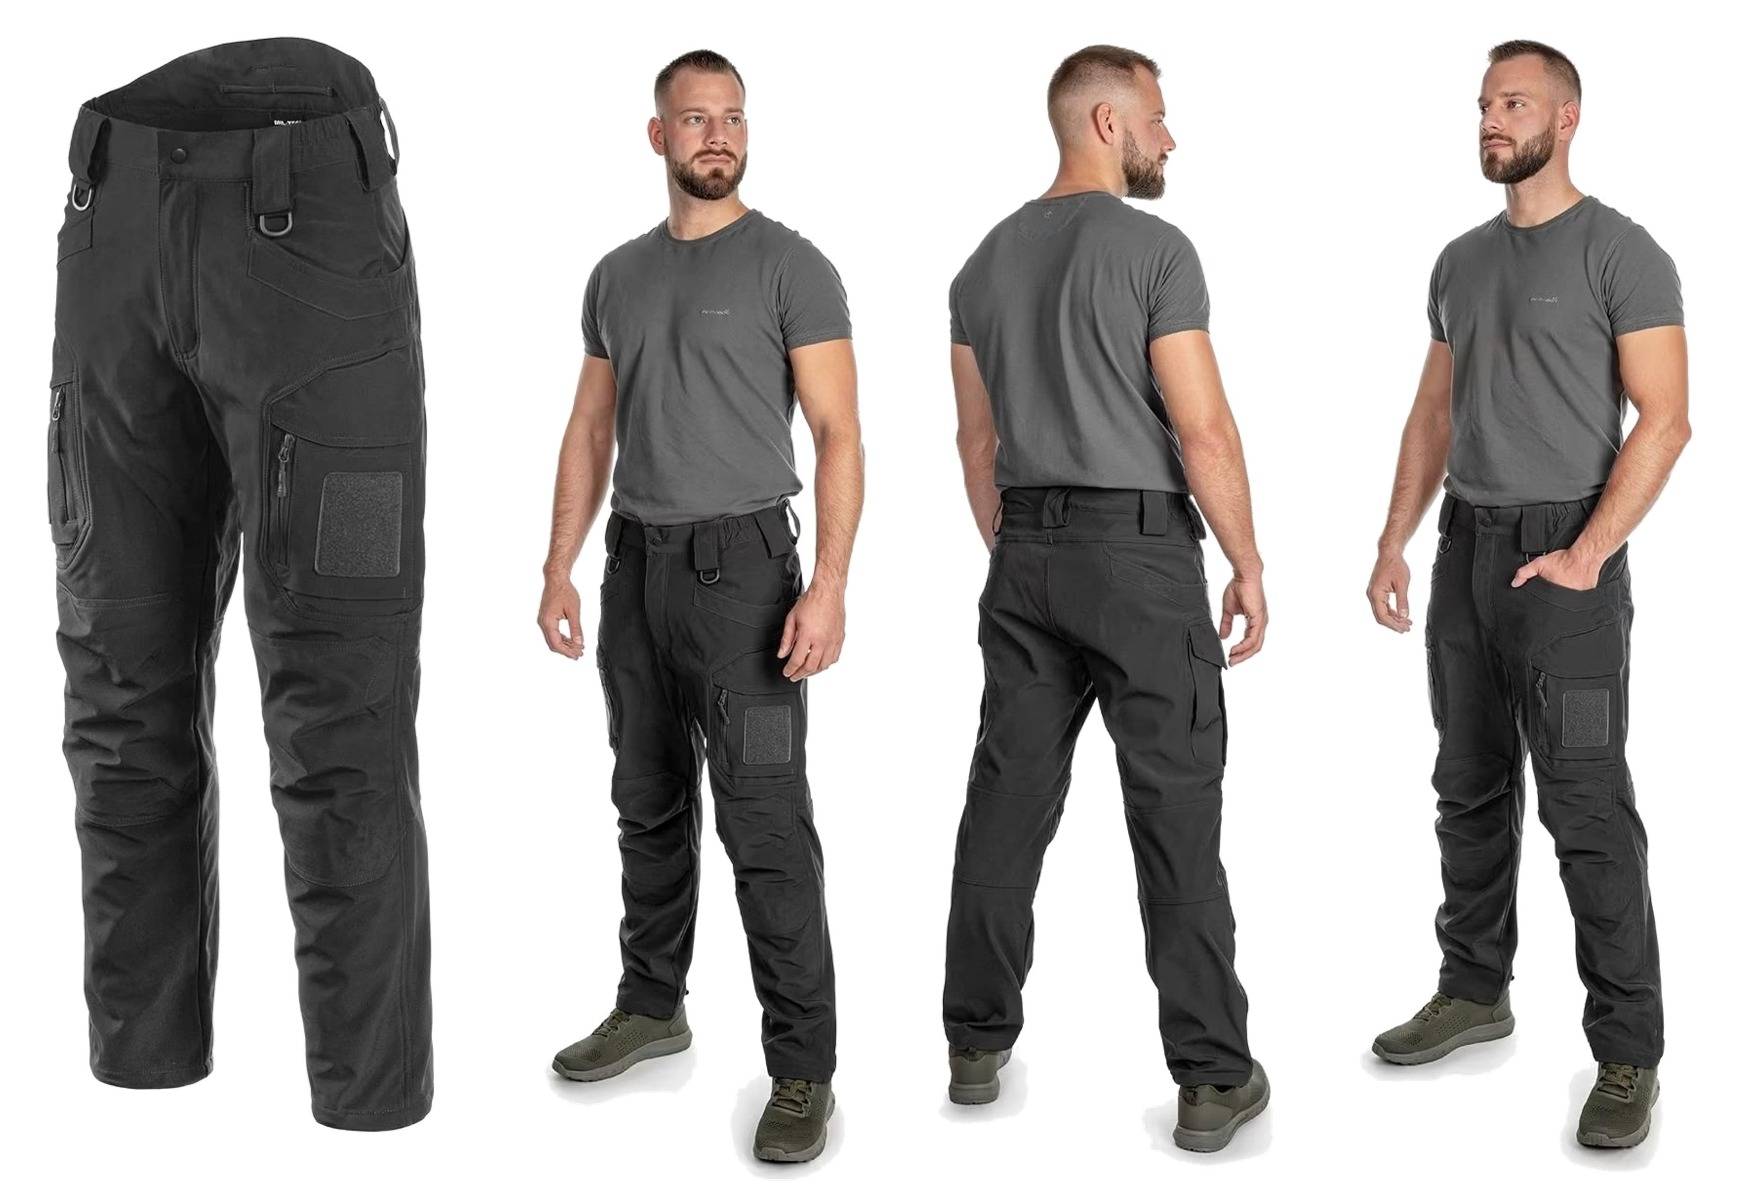 Odkrijte vrhunske vojaške hlače Ranger Softshell model Assault z integriranim flis slojem! Nepremočljive, tople, in trpežne za udobno in zaščiteno doživetje na prostem. Primerne za vojake, policiste, reševalce, planince in športnike. Na voljo v črni bar